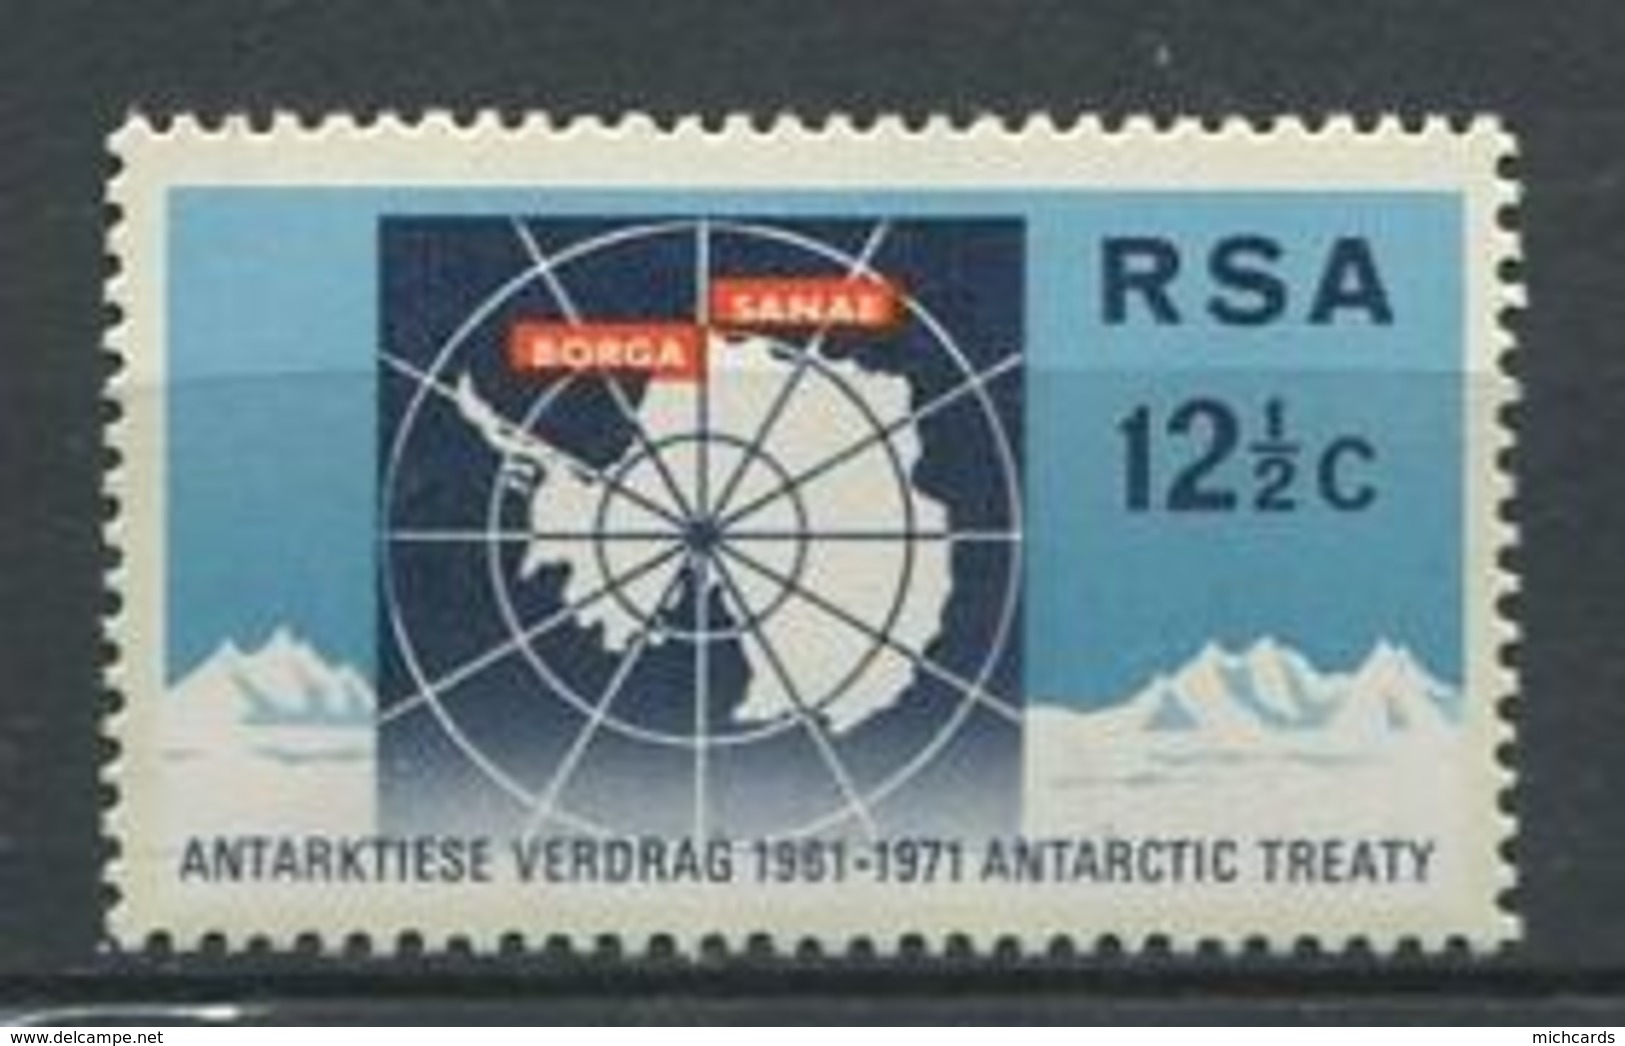 240 AFRIQUE DU SUD (RSA) 1971 - Yvert 329 - Antarctique Polaire Carte - Neuf ** (MNH) Sans Charniere - Neufs